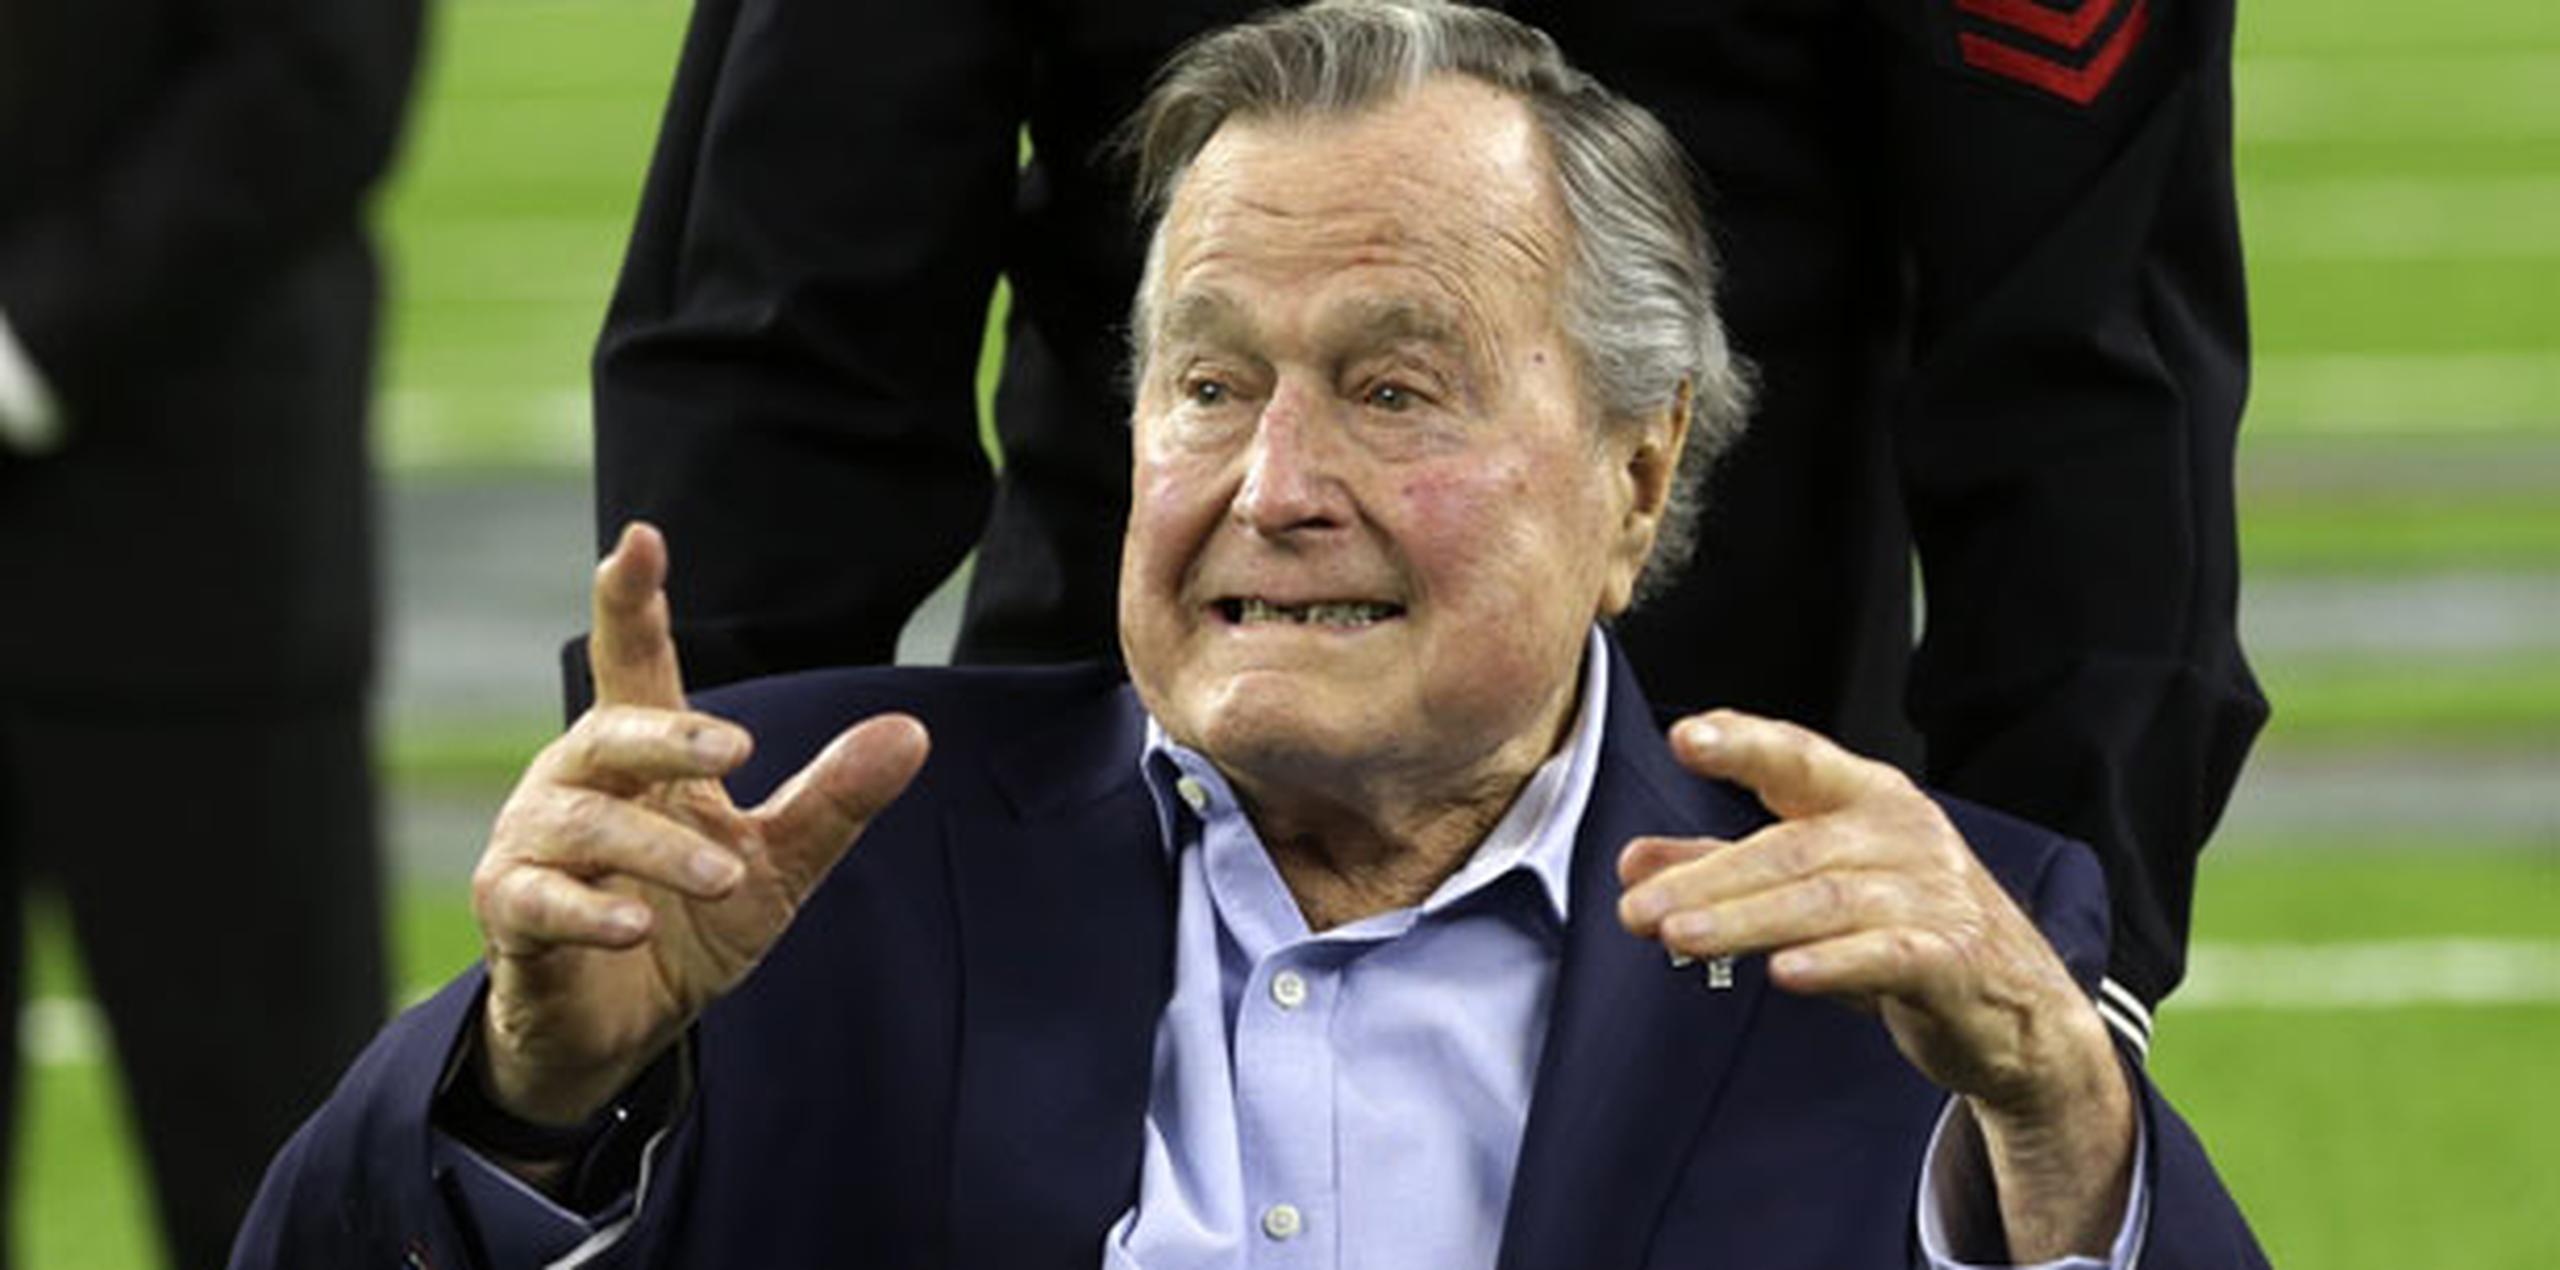 El exmandatario de 92 años y padre del también expresidente George W. Bush ha estado bajo observación en el Hospital Metodista desde el viernes debido a una tos persistente. (Archivo)